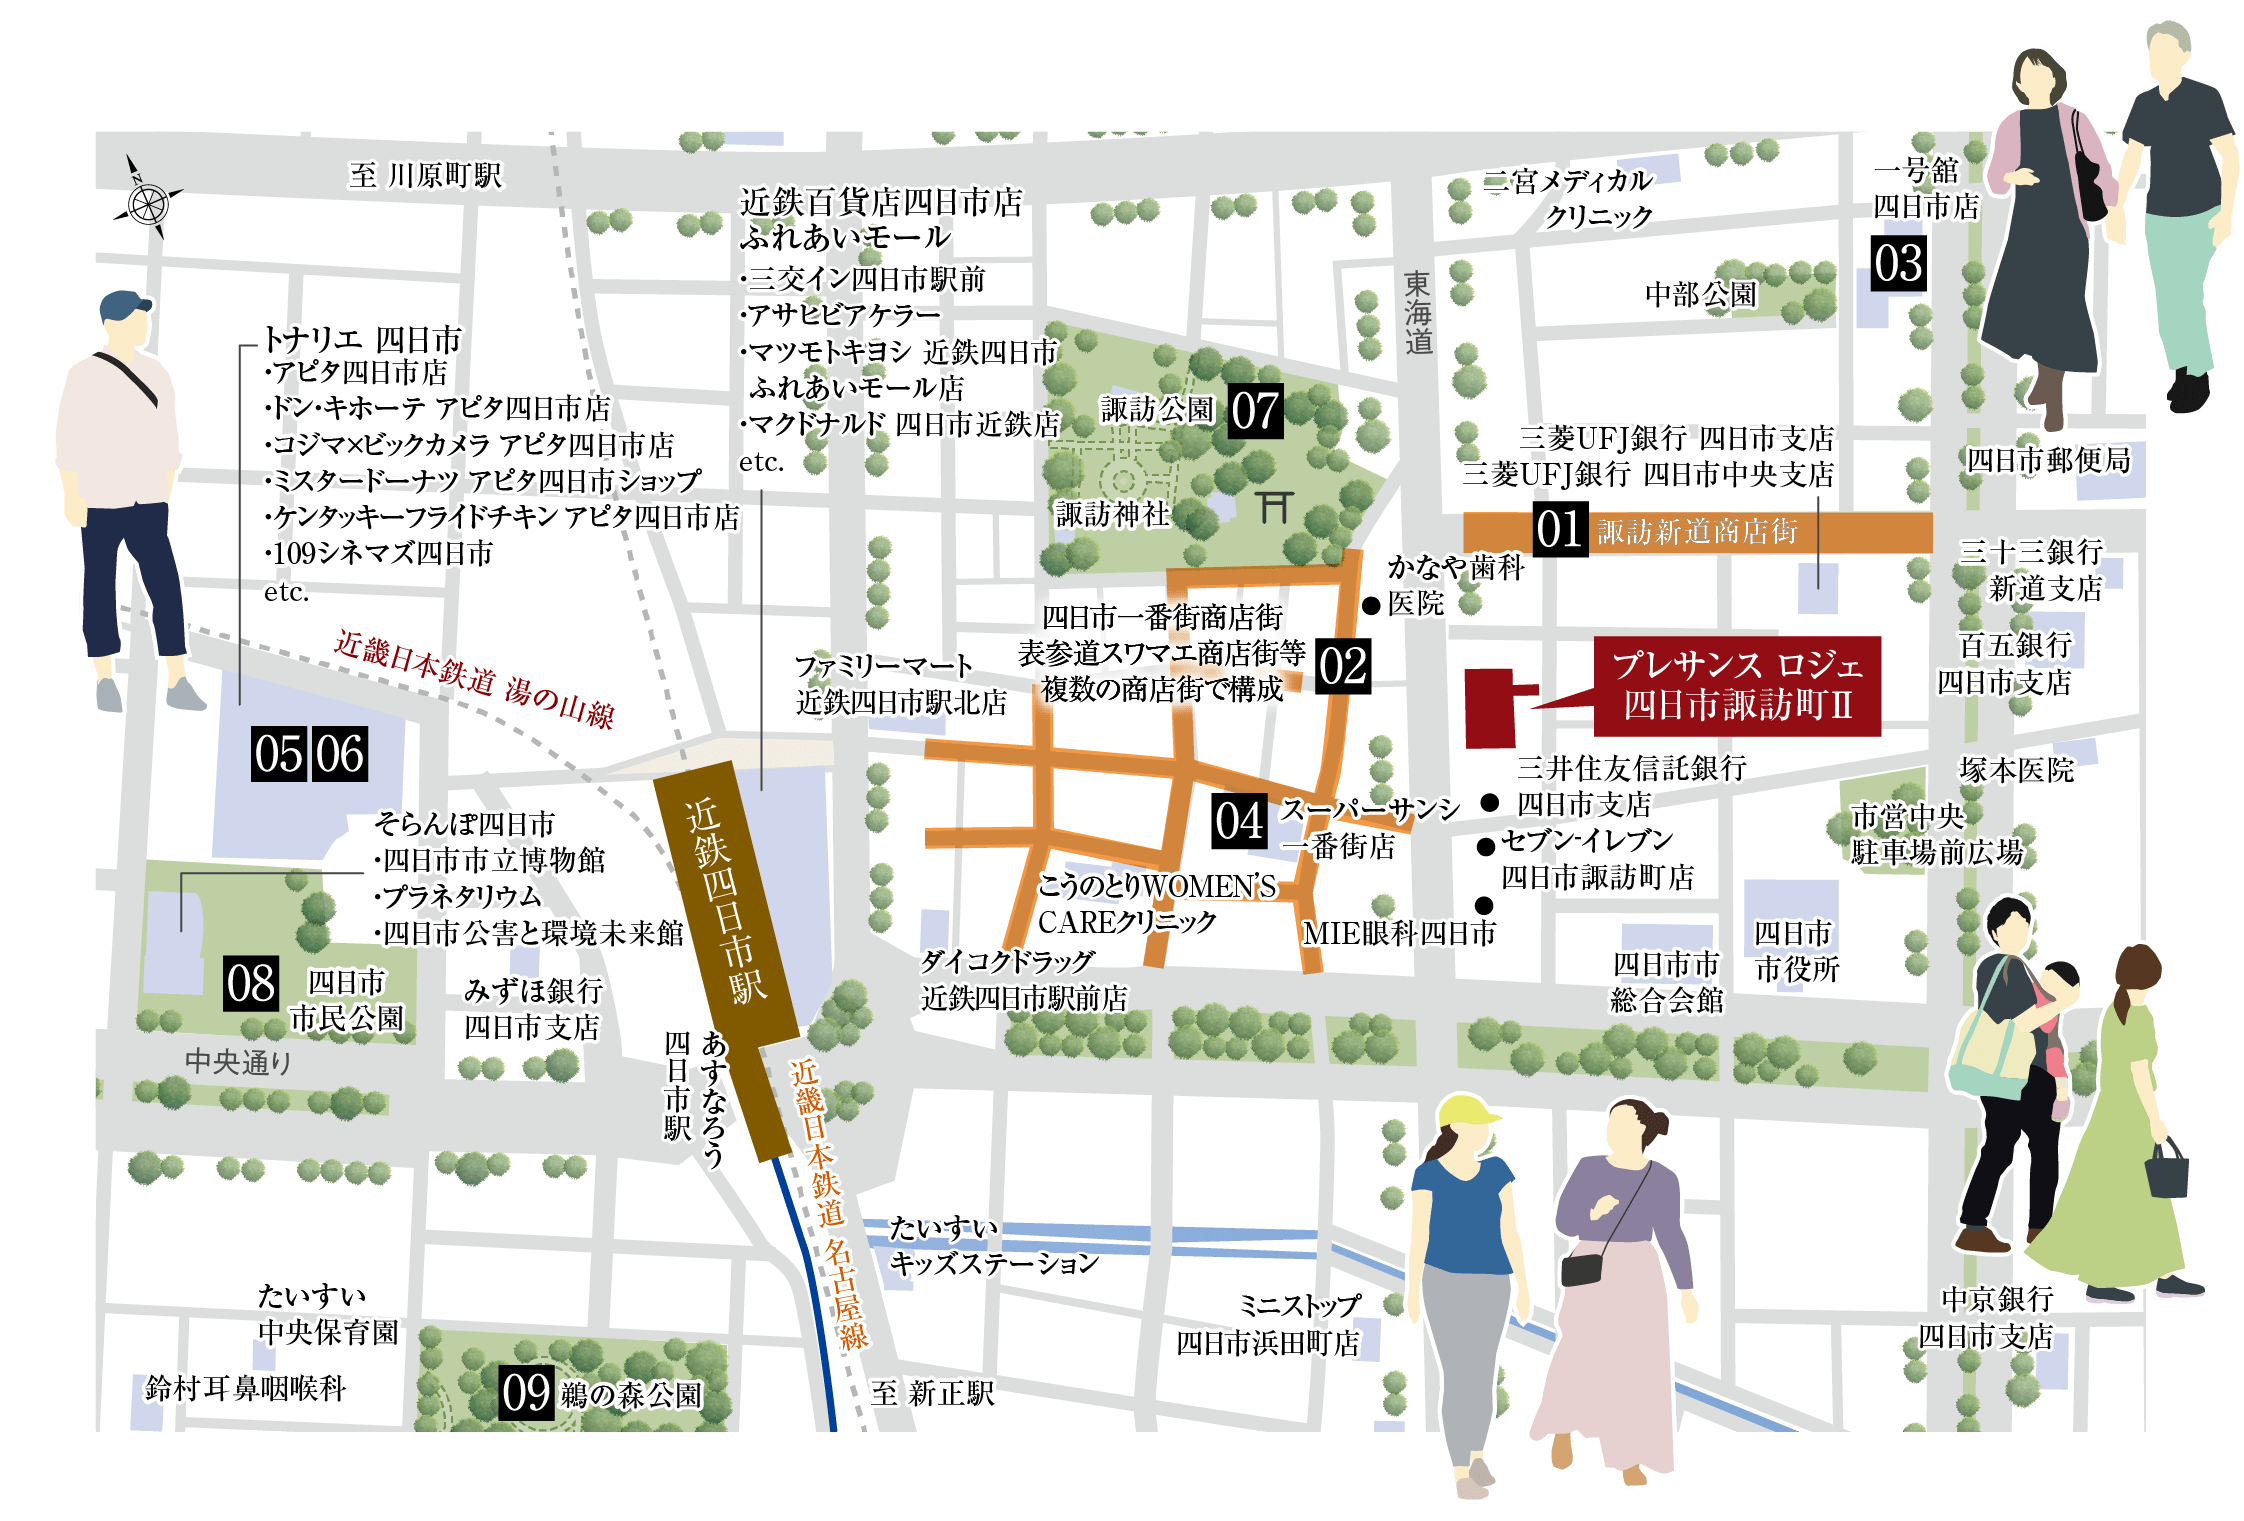 四日市 MAP（お子さまのいるファミリー）